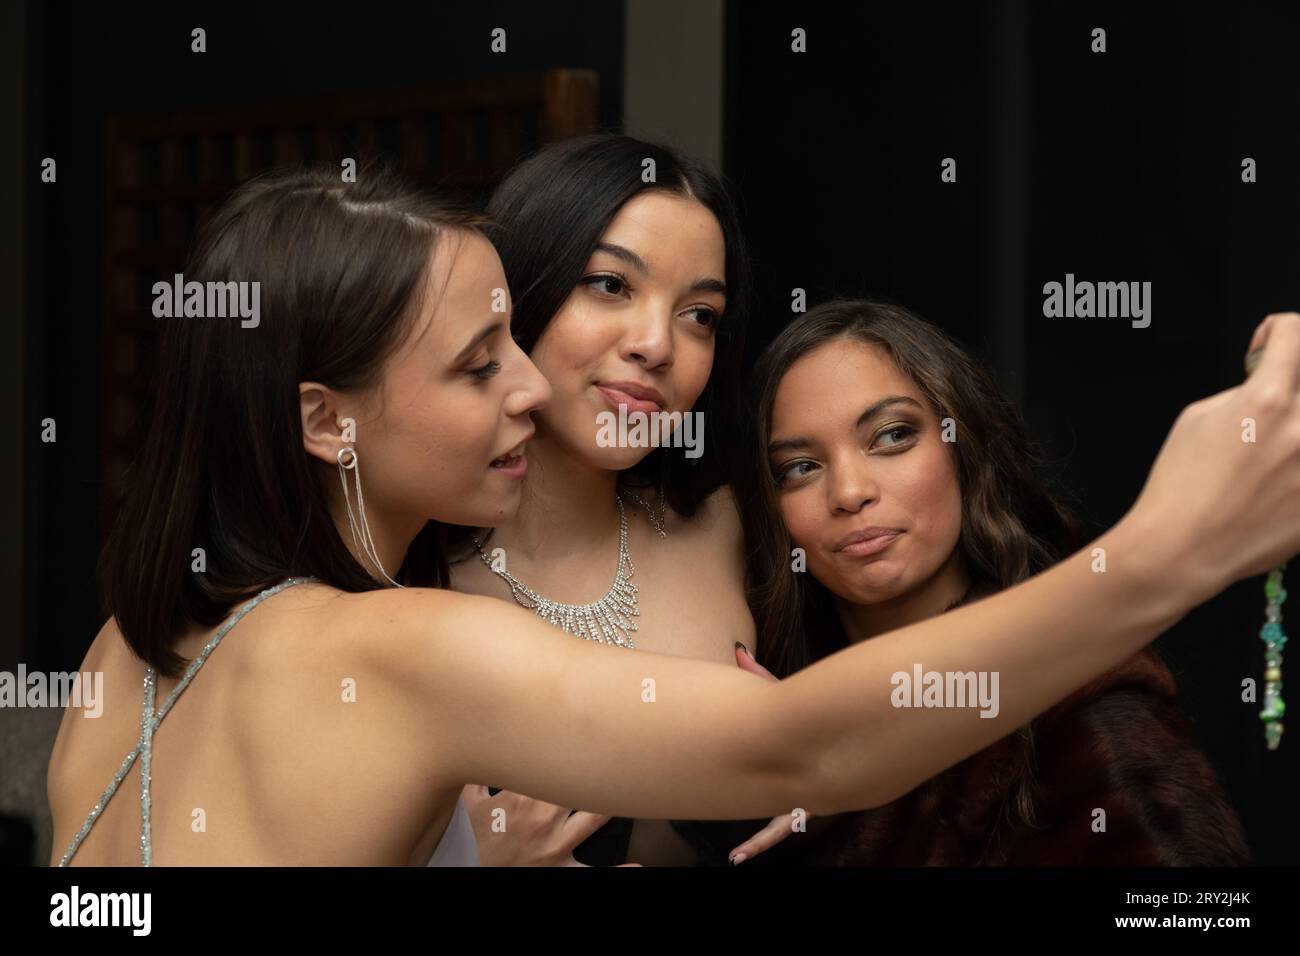 Dans un instantané de bal rapproché, trois jeunes femmes prennent une pose, capturant un moment joyeux alors qu'elles prennent un selfie ensemble Banque D'Images